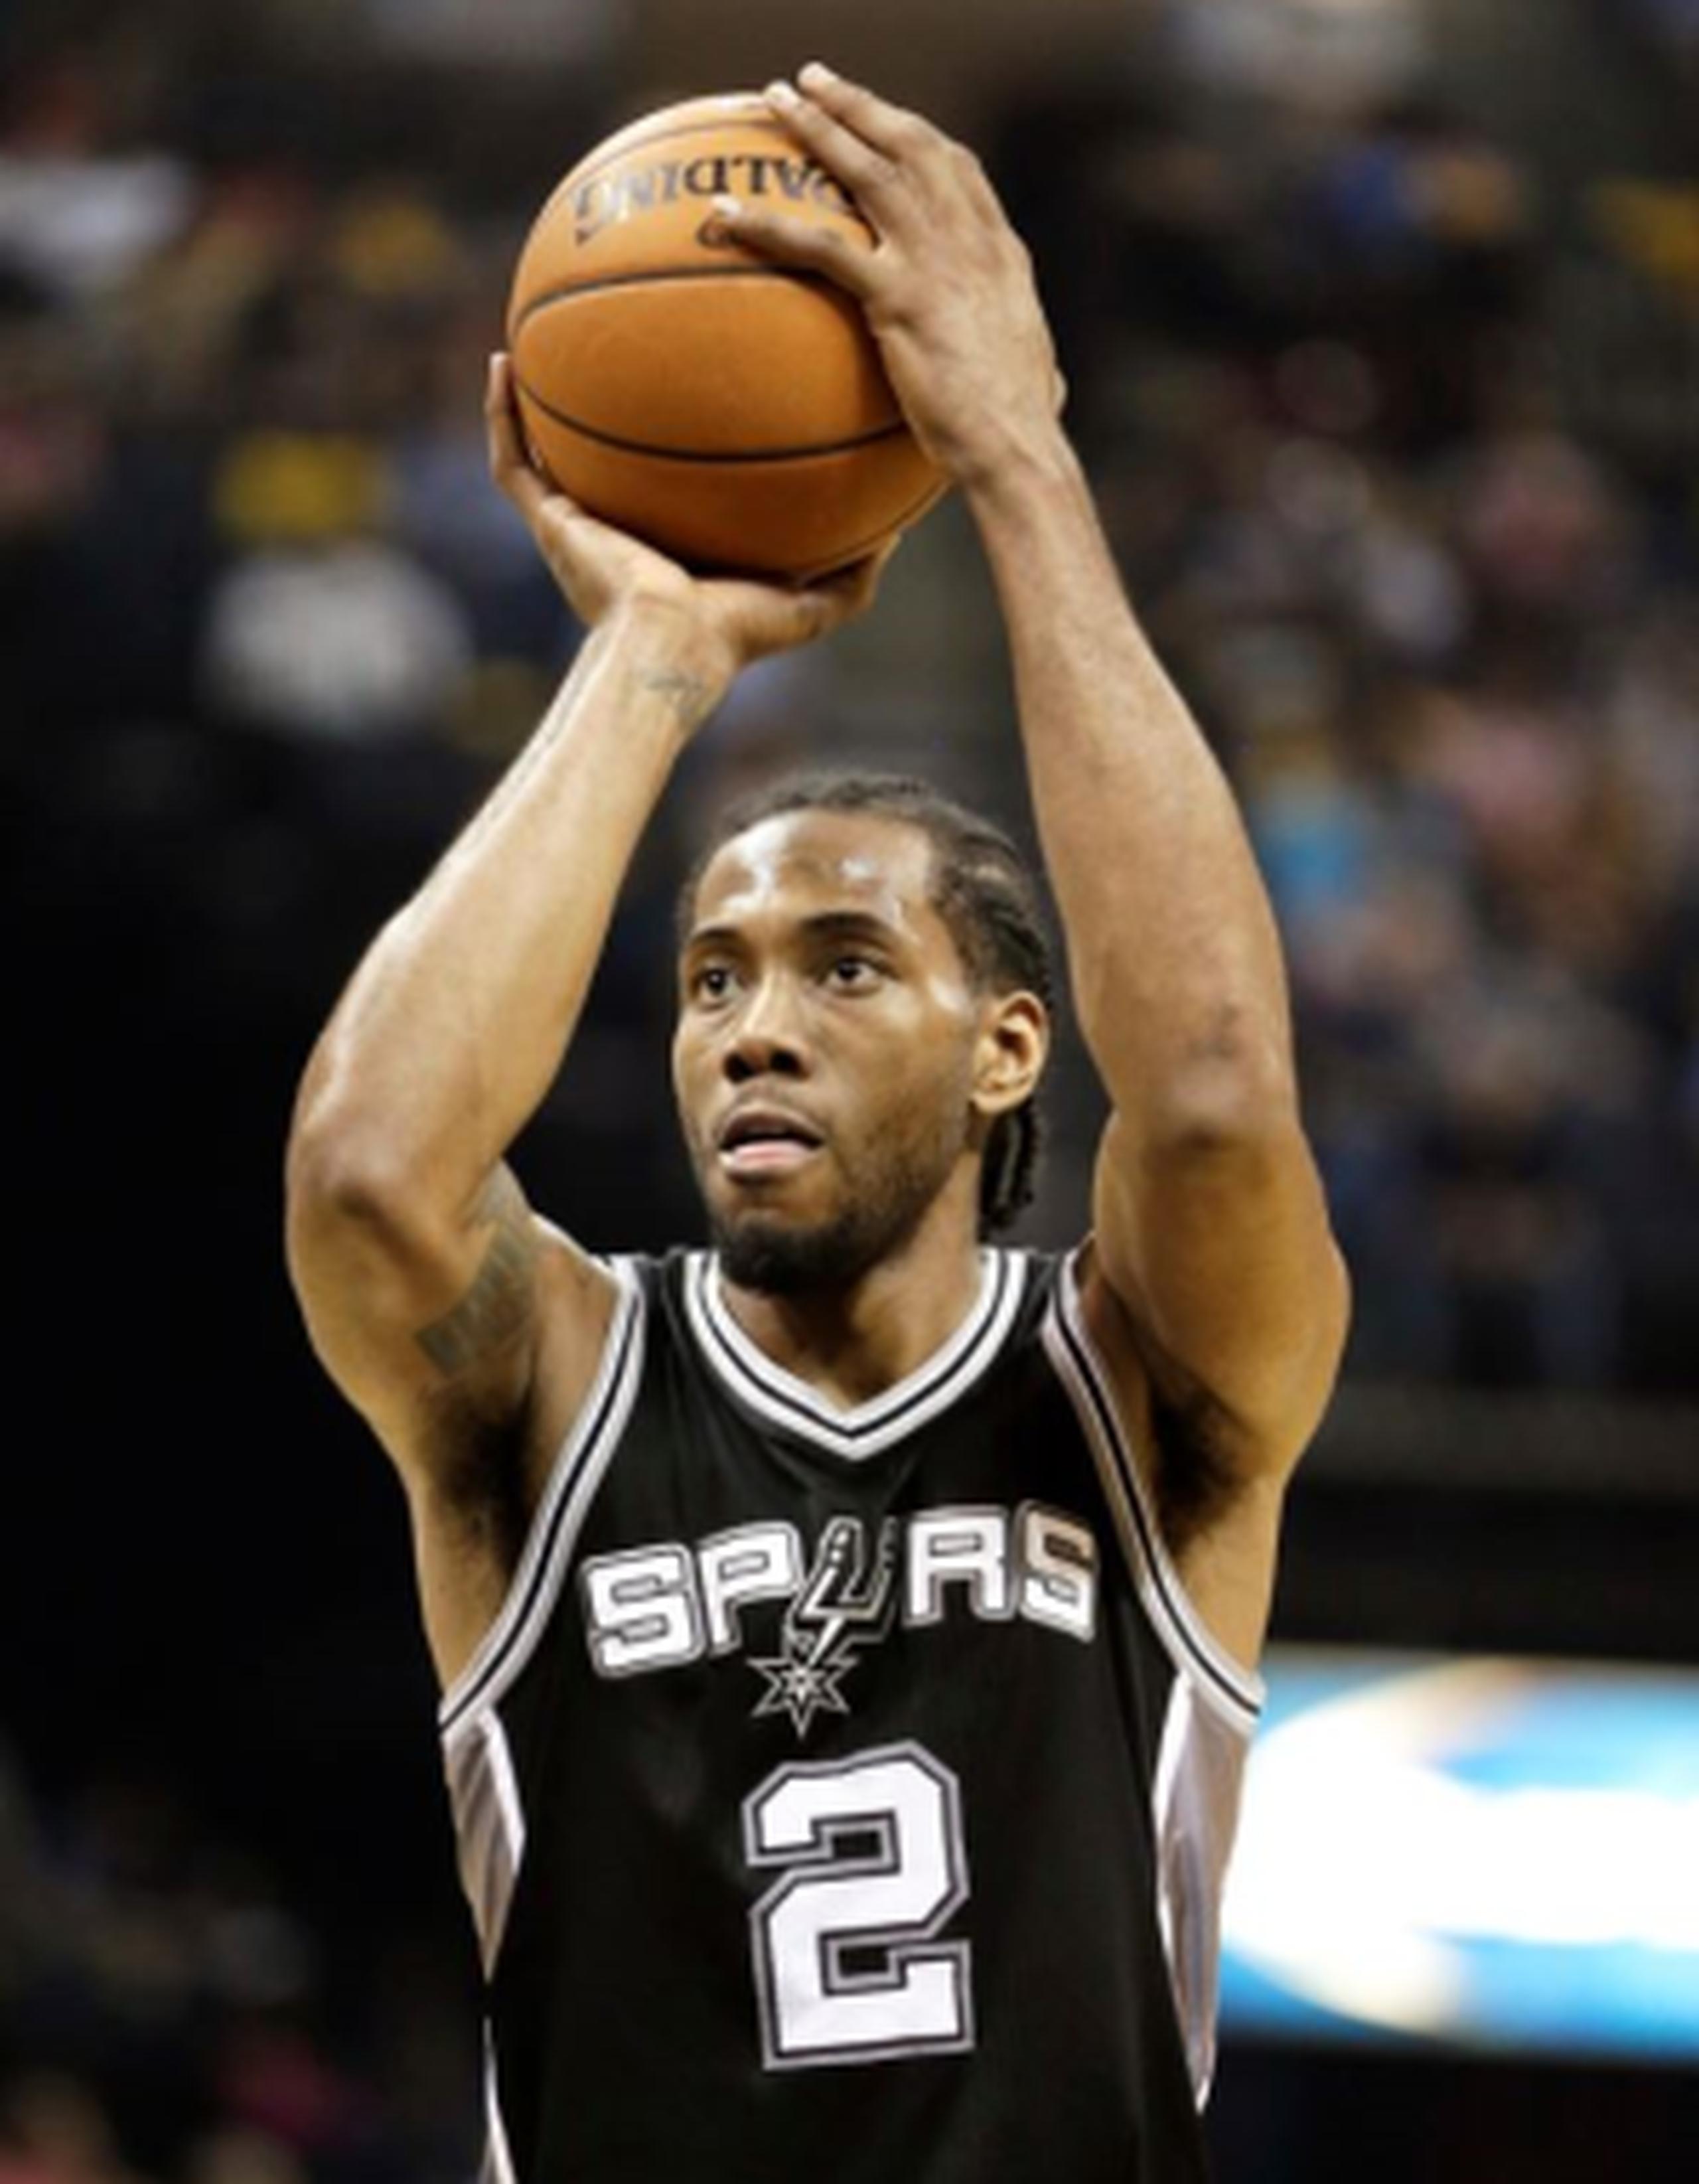 El alero de 24 años de los Spurs de San Antonio, Kawhi Leonard, fue seleccionado hoy de manera unánime como el Jugador Defensivo del Año 2015-16 de la NBA. (AP)